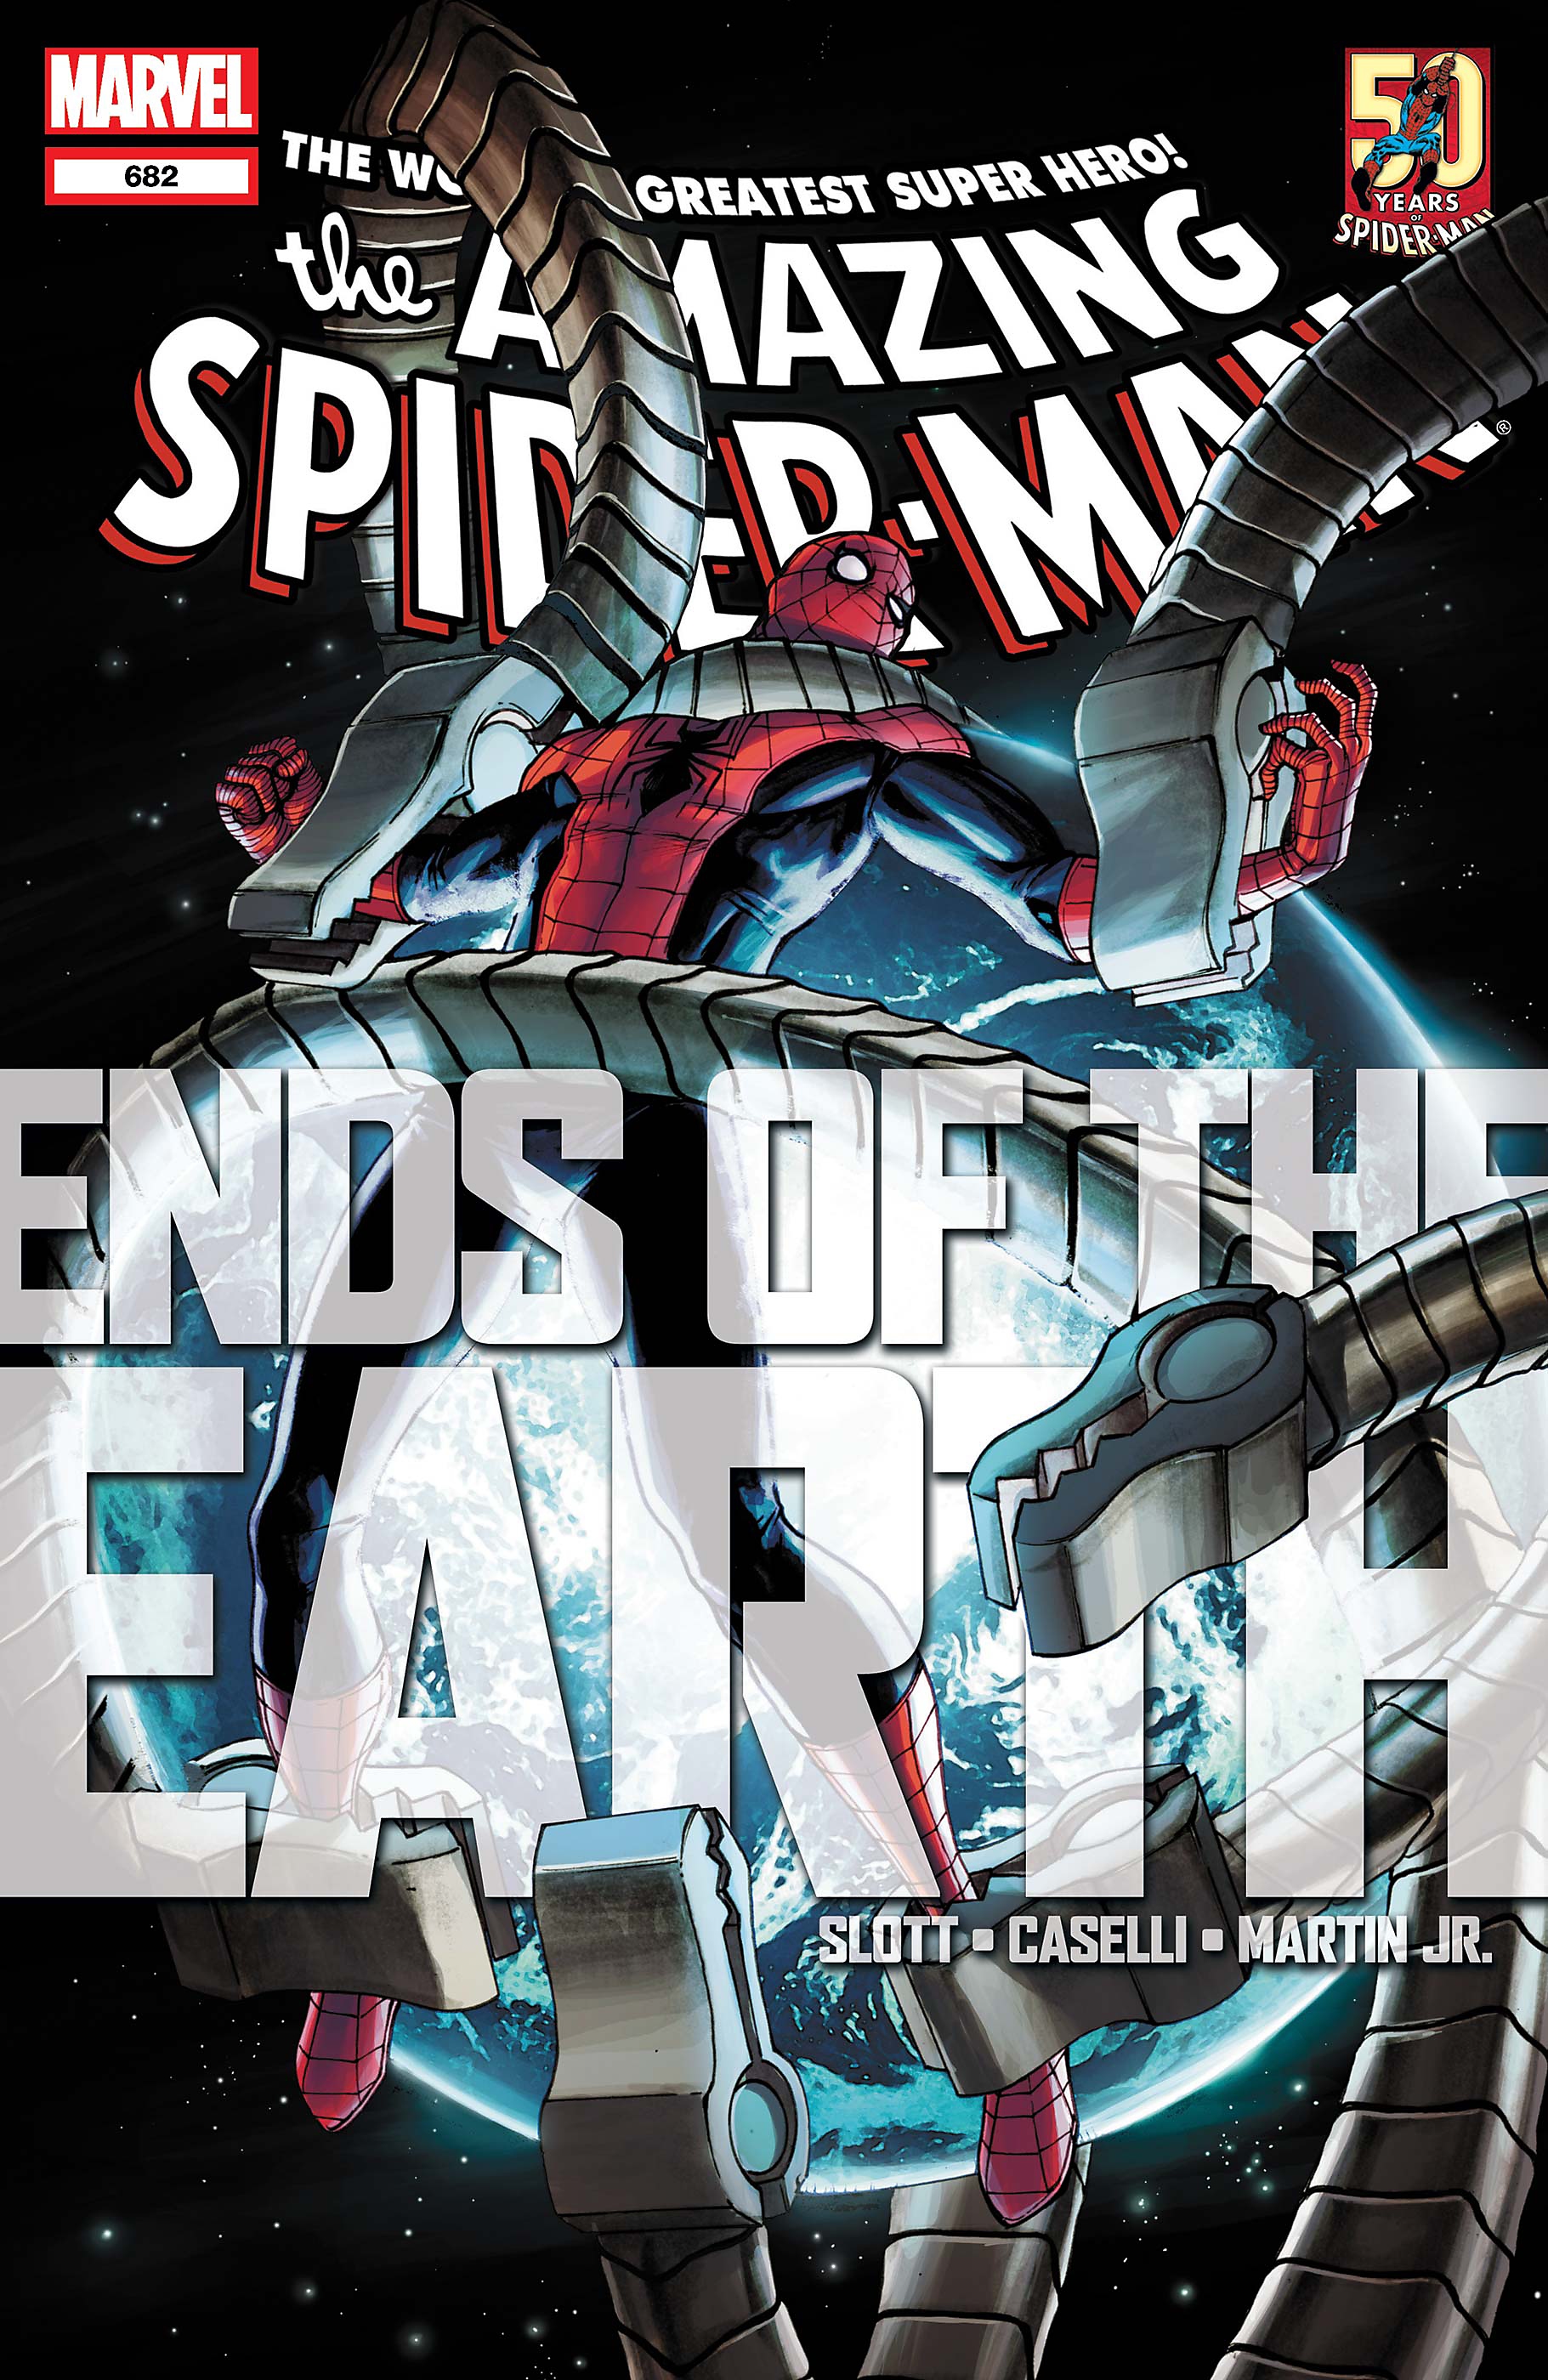 spider-man comando silver guia de leitura dos quadrinhos